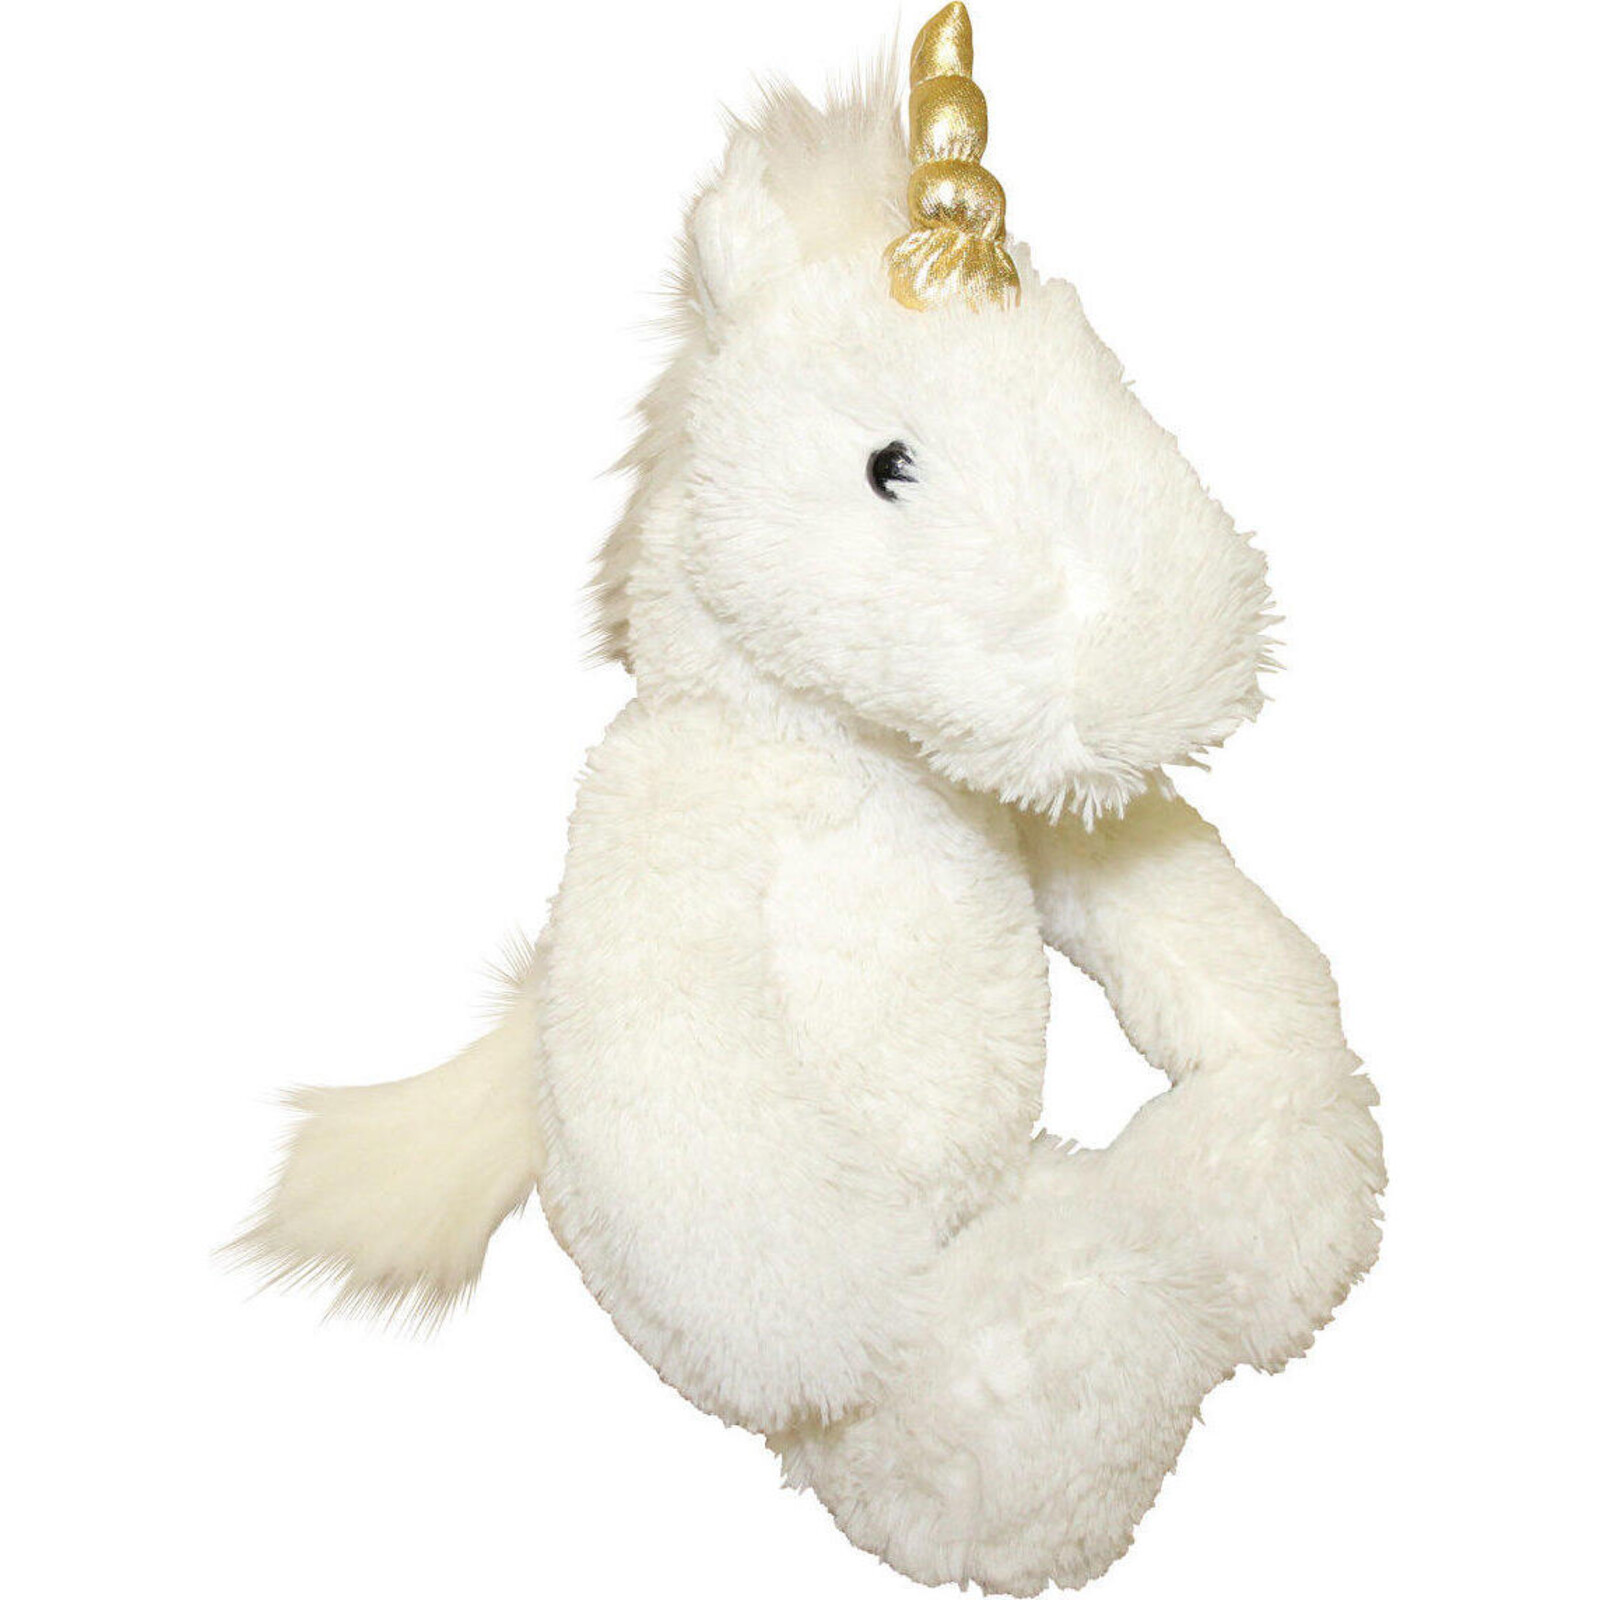 Plush Unicorn Fluffy White